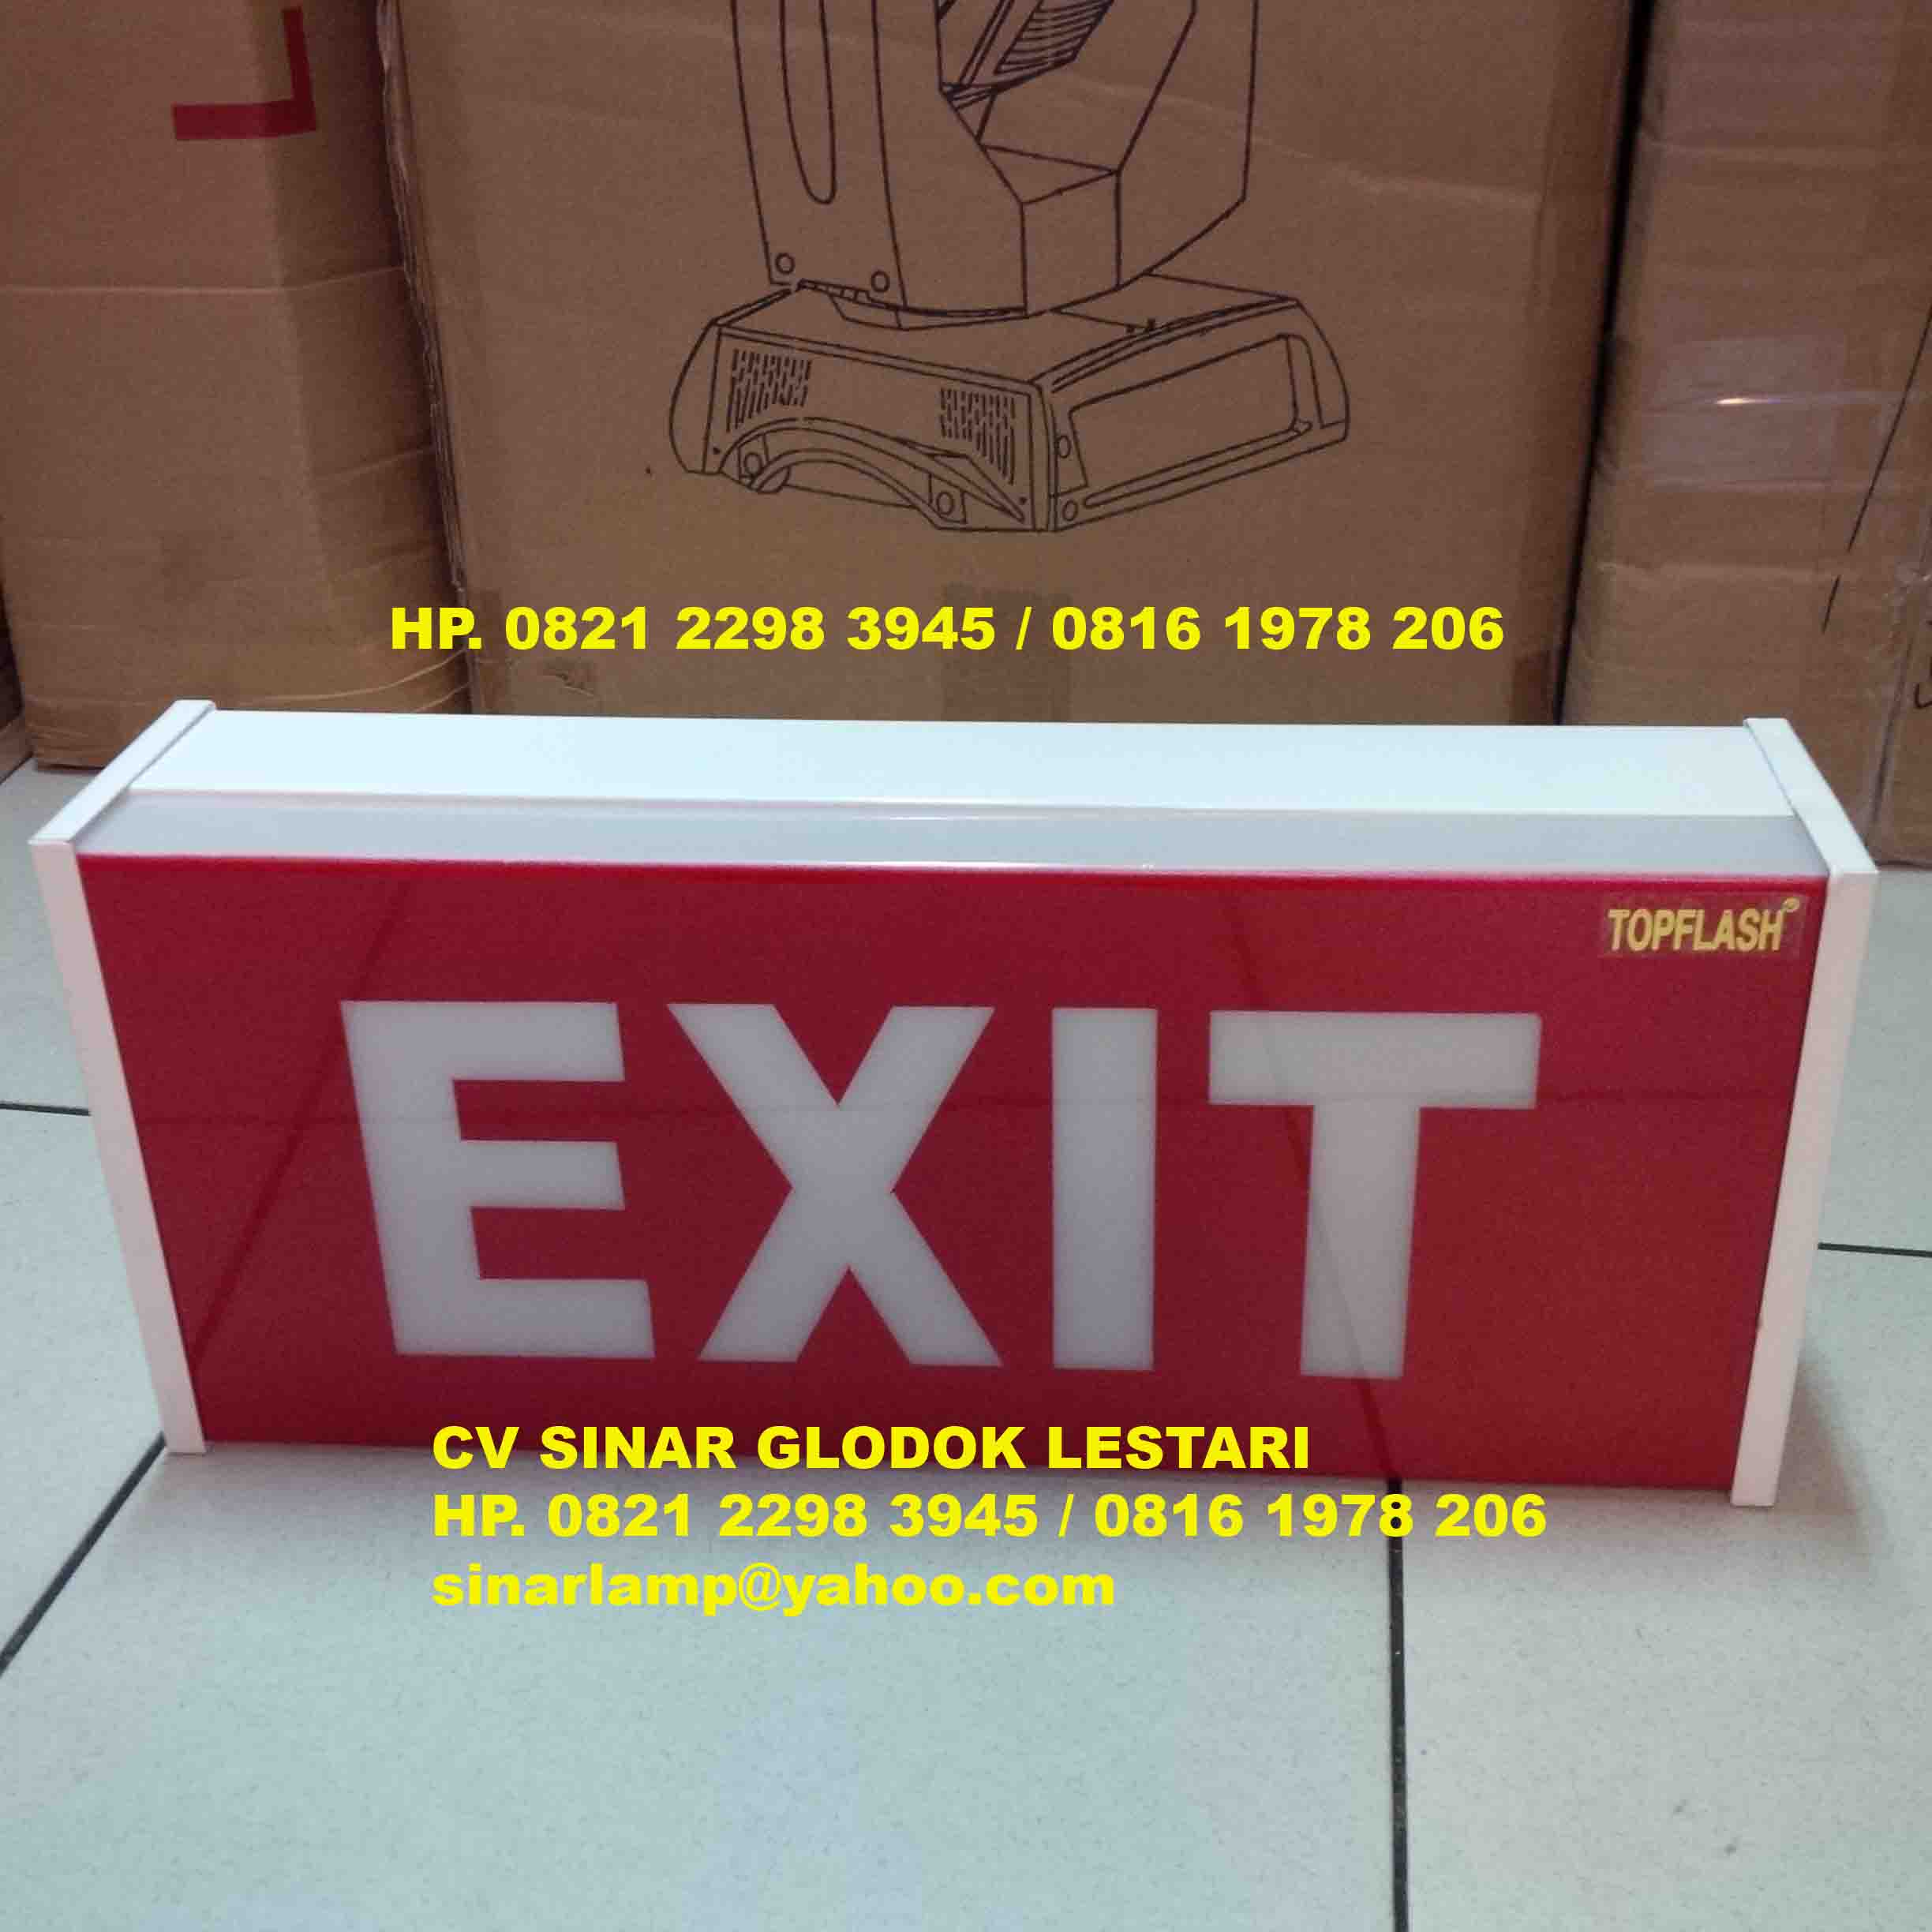 Emergency Exit Box Warna Merah